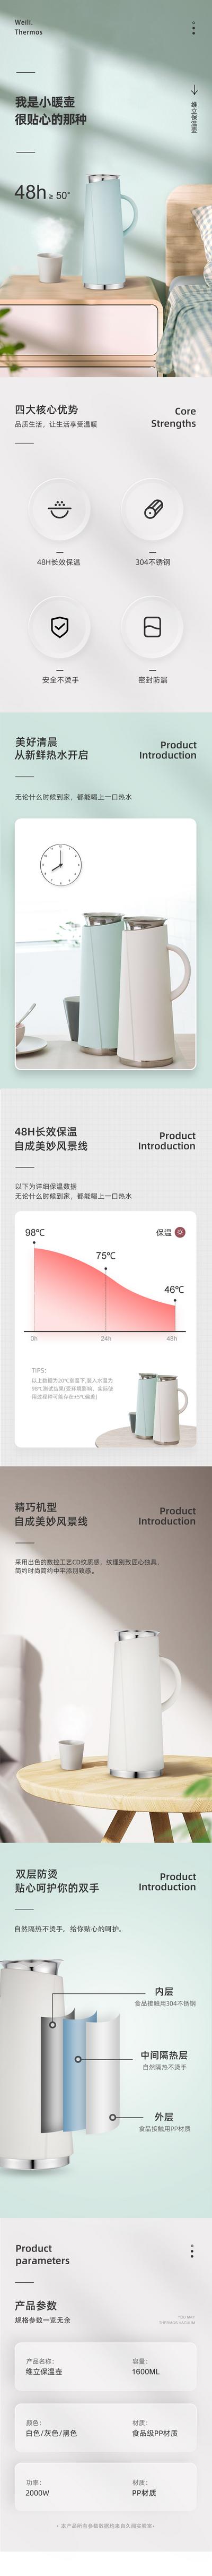 南门网 广告 海报 电商 详情页 水壶 电暖壶 介绍 长图